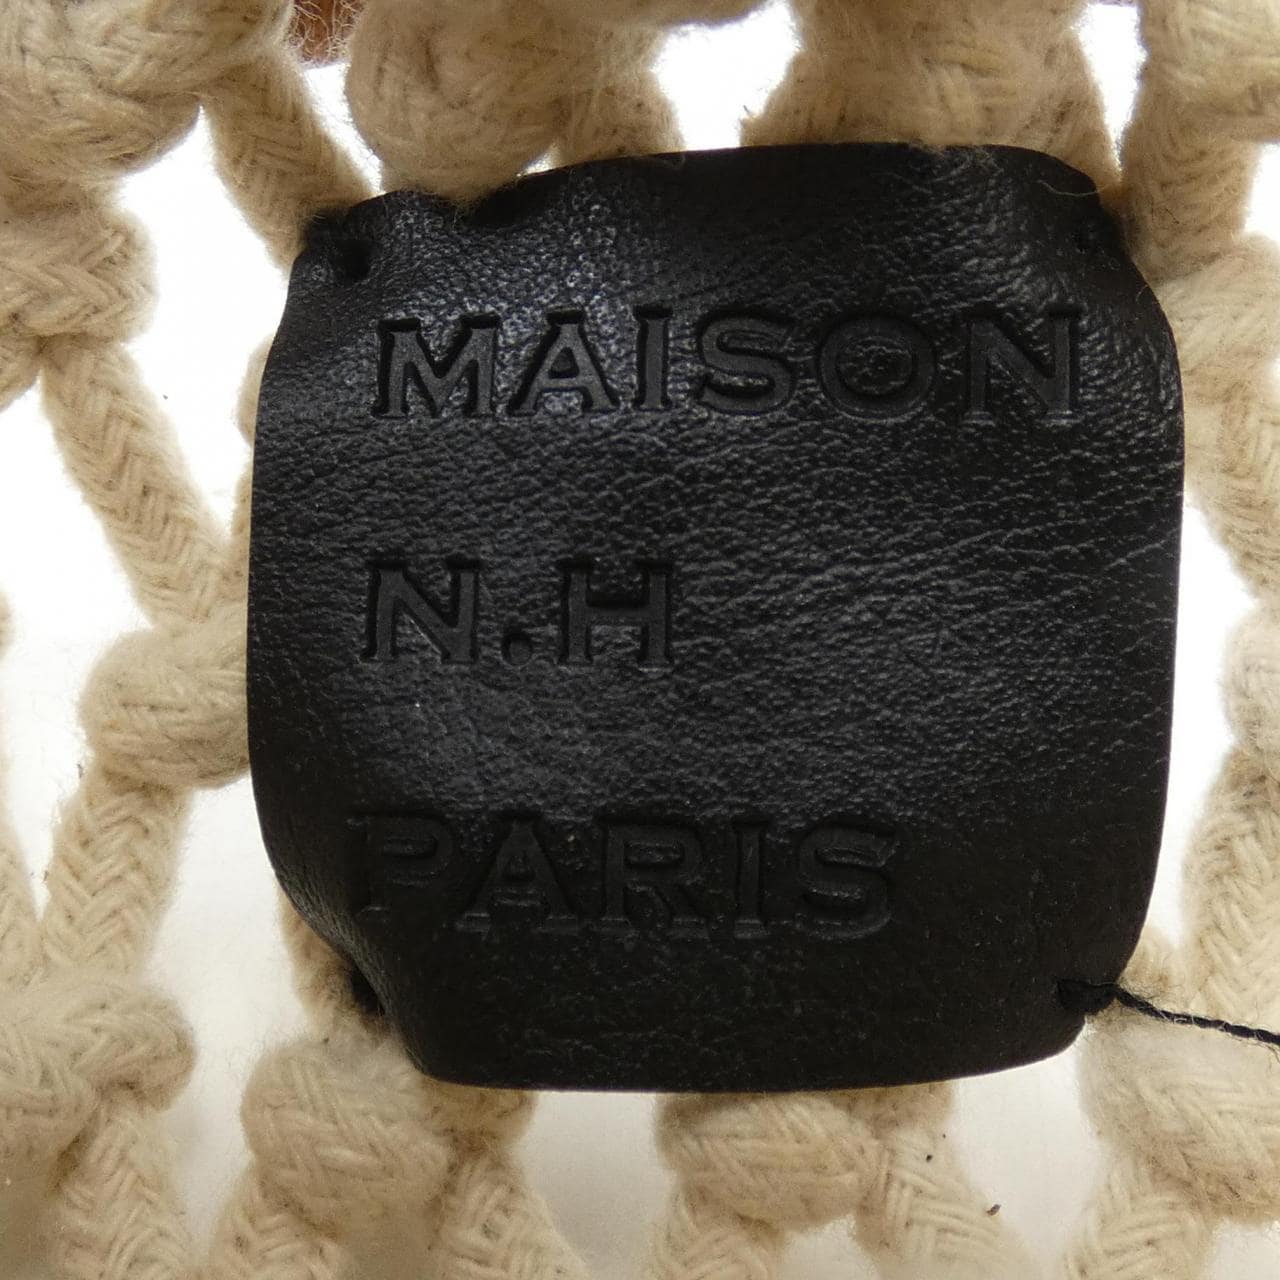 MAISON N.H PARIS BAG